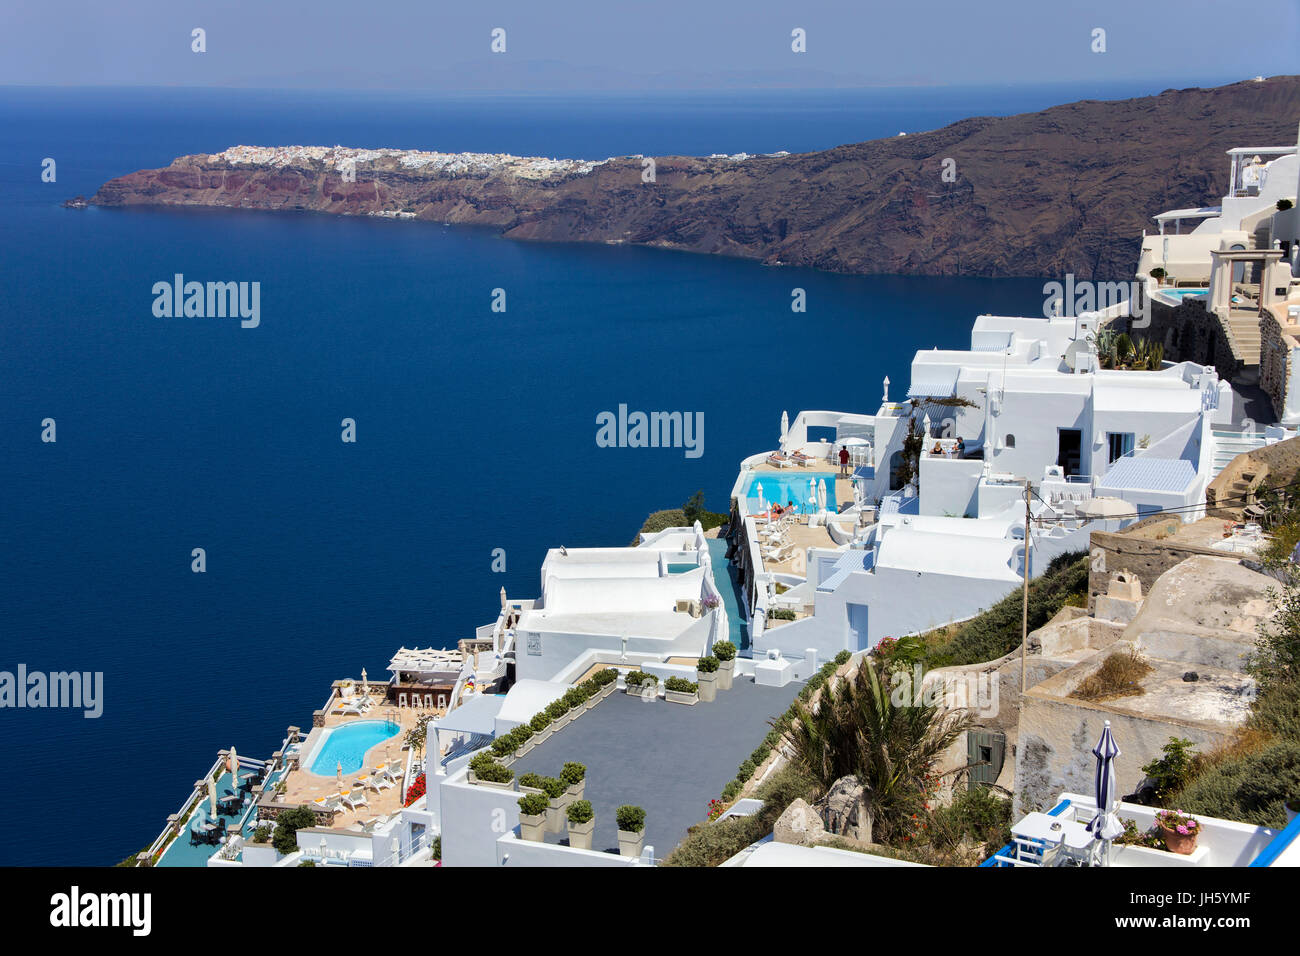 Luxurioese kraterrand hotelanlagen mit pool bei am see, Blick auf die caldera, dahinter das dorf oia, Santorin, Canaries, aegaeis, Spanien Banque D'Images